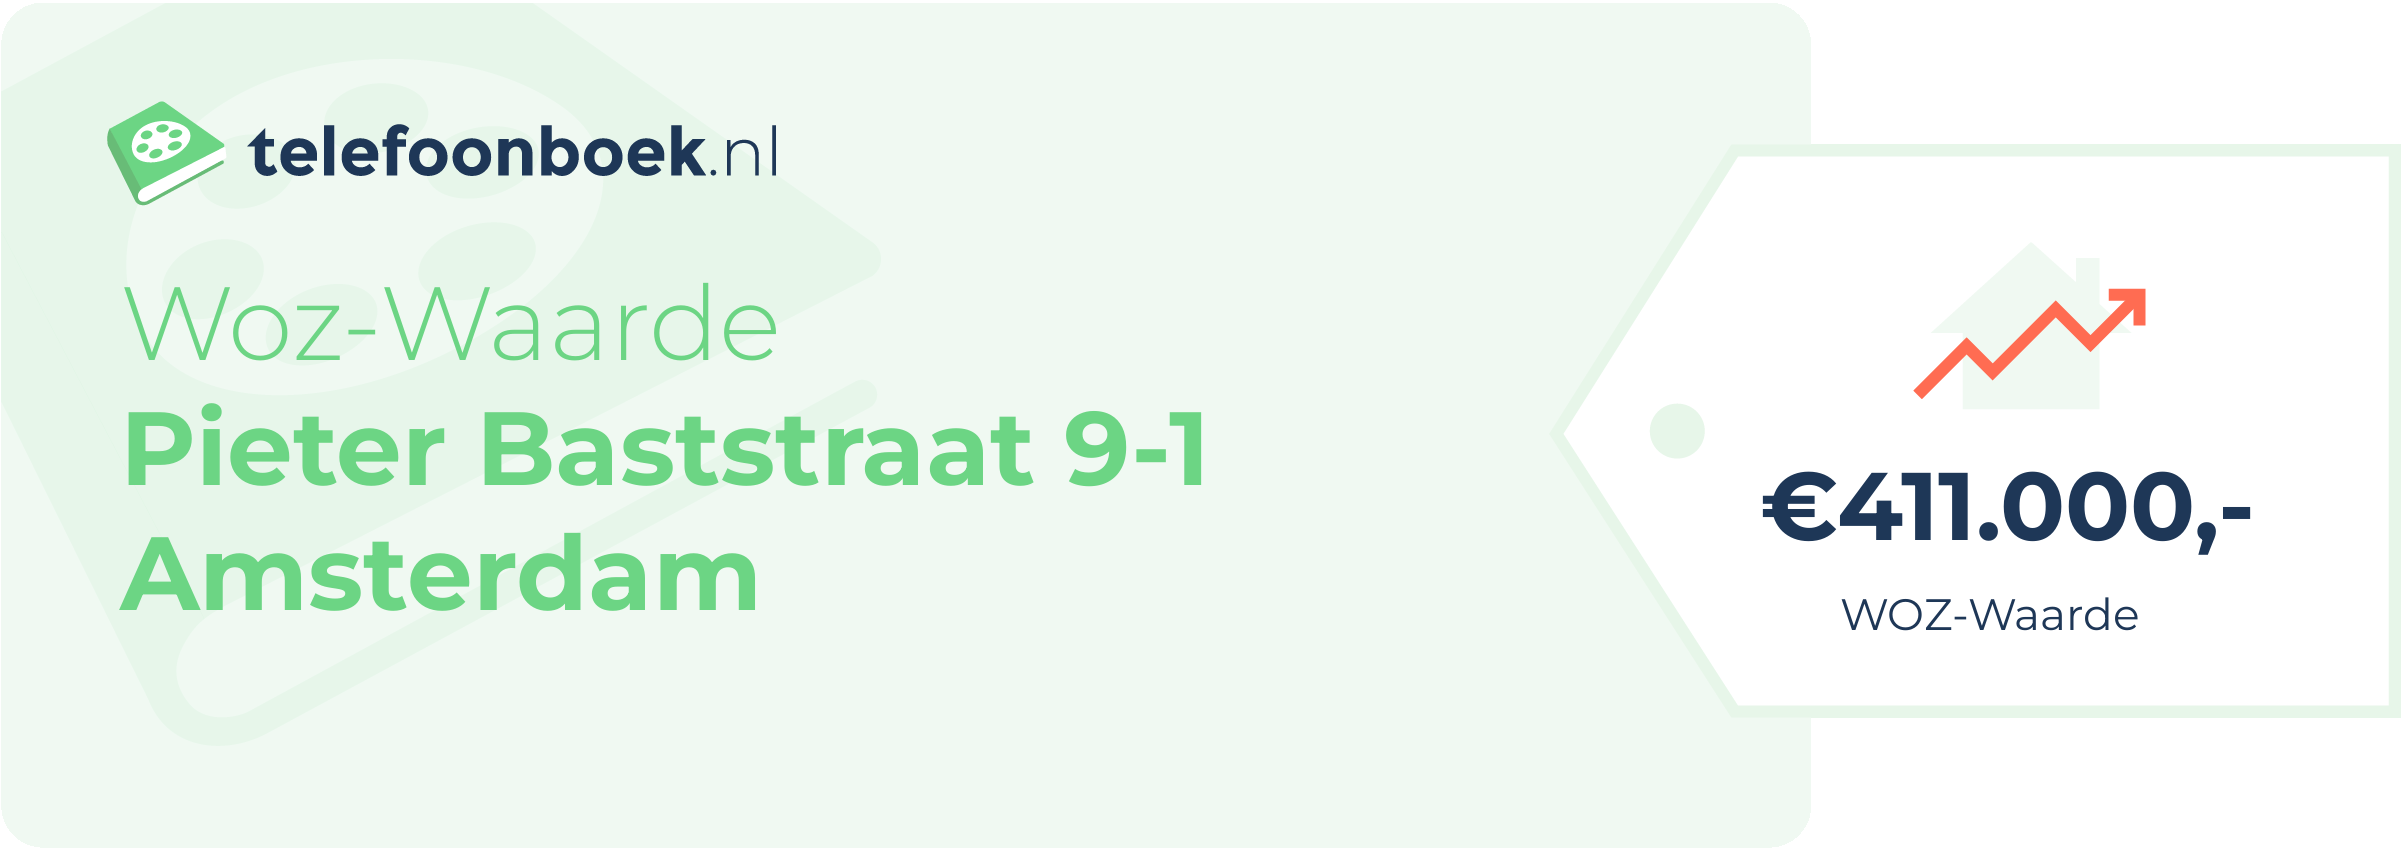 WOZ-waarde Pieter Baststraat 9-1 Amsterdam